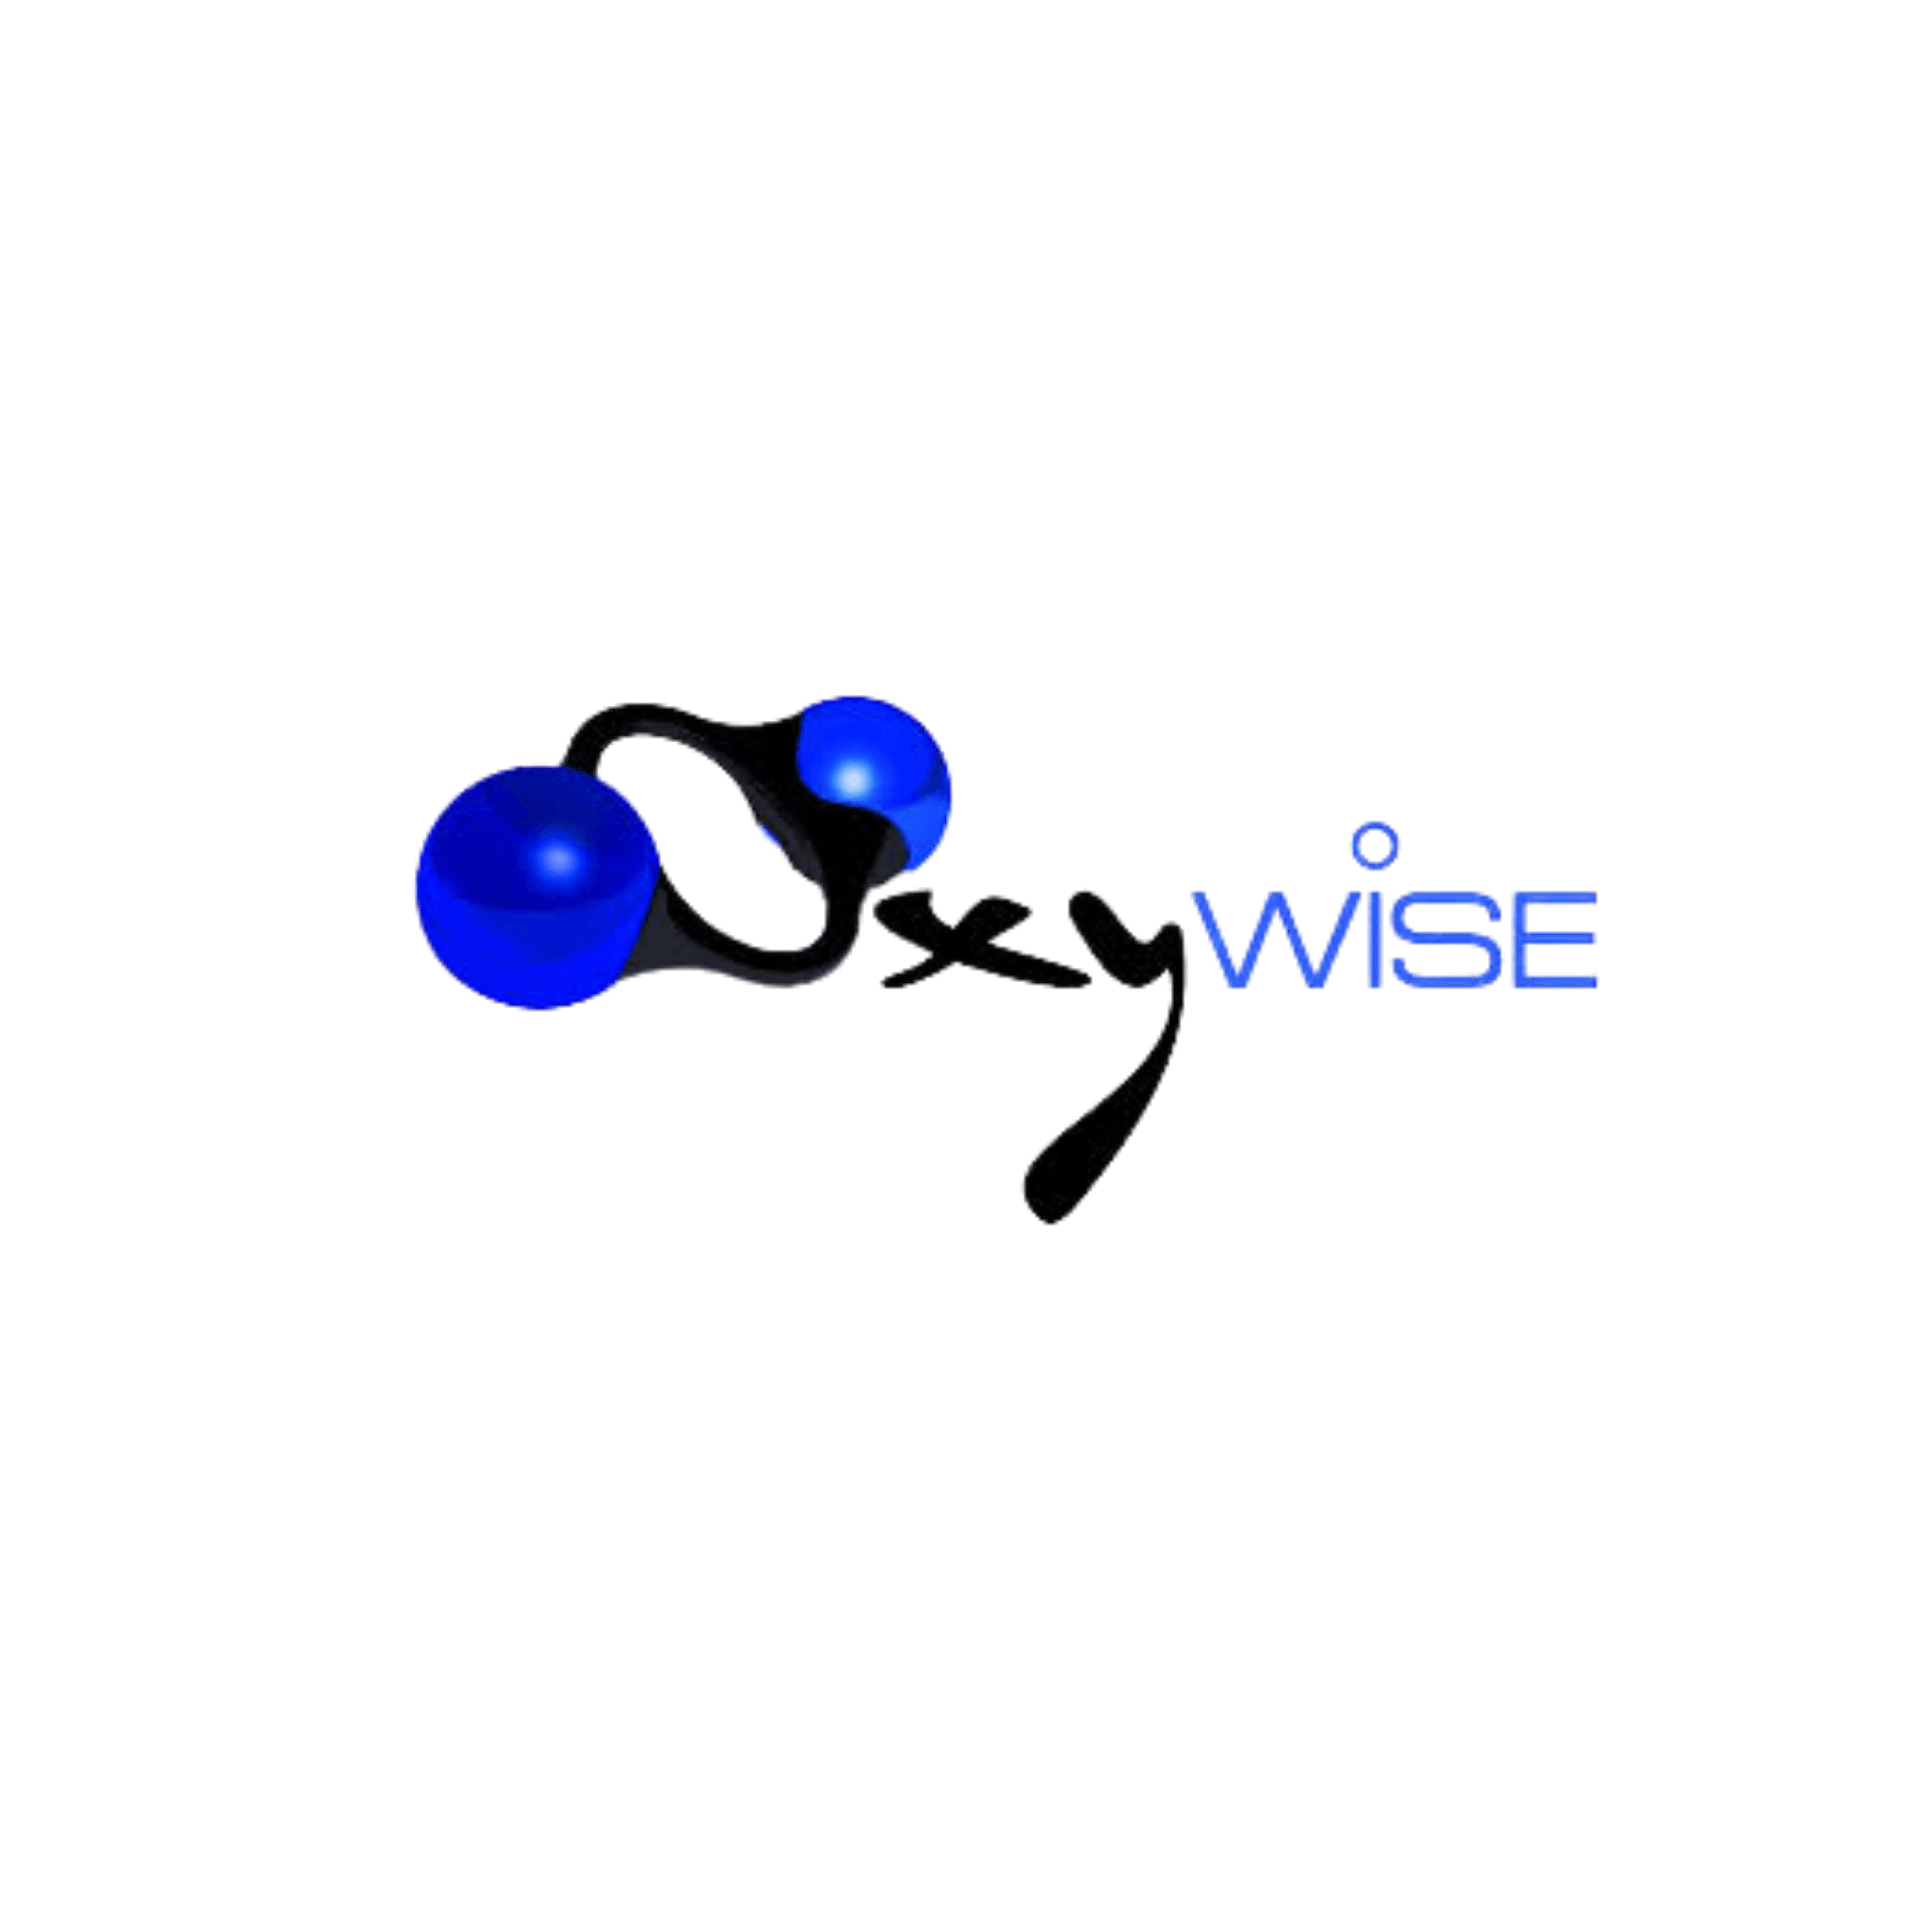 Oxywise Logo